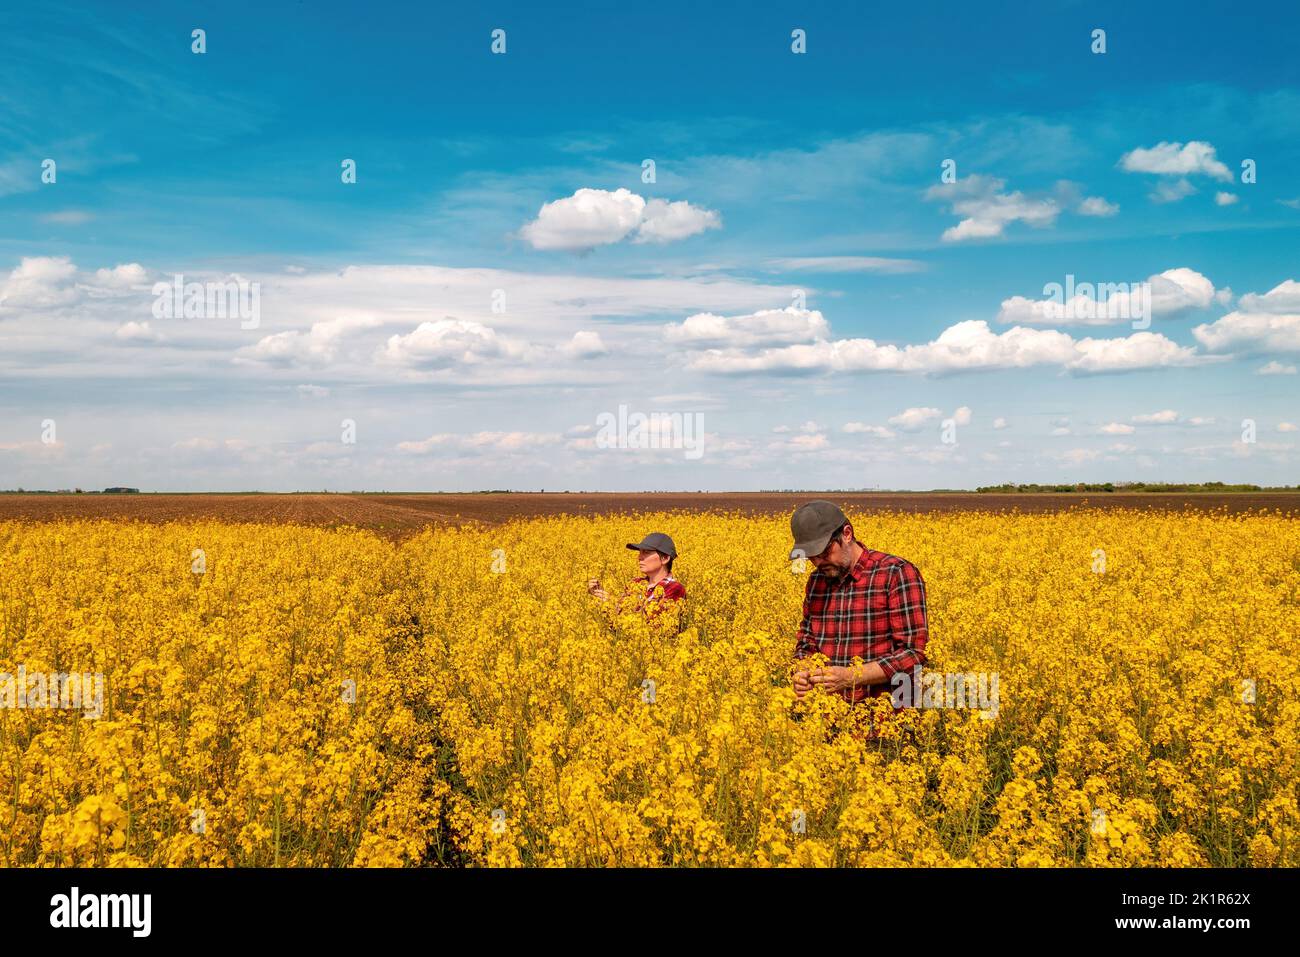 Vue en grand angle de deux ouvriers agricoles examinant des cultures en fleurs de champ de colza le jour de printemps ensoleillé, mâle et femelle fermier debout dans le cultivat Banque D'Images